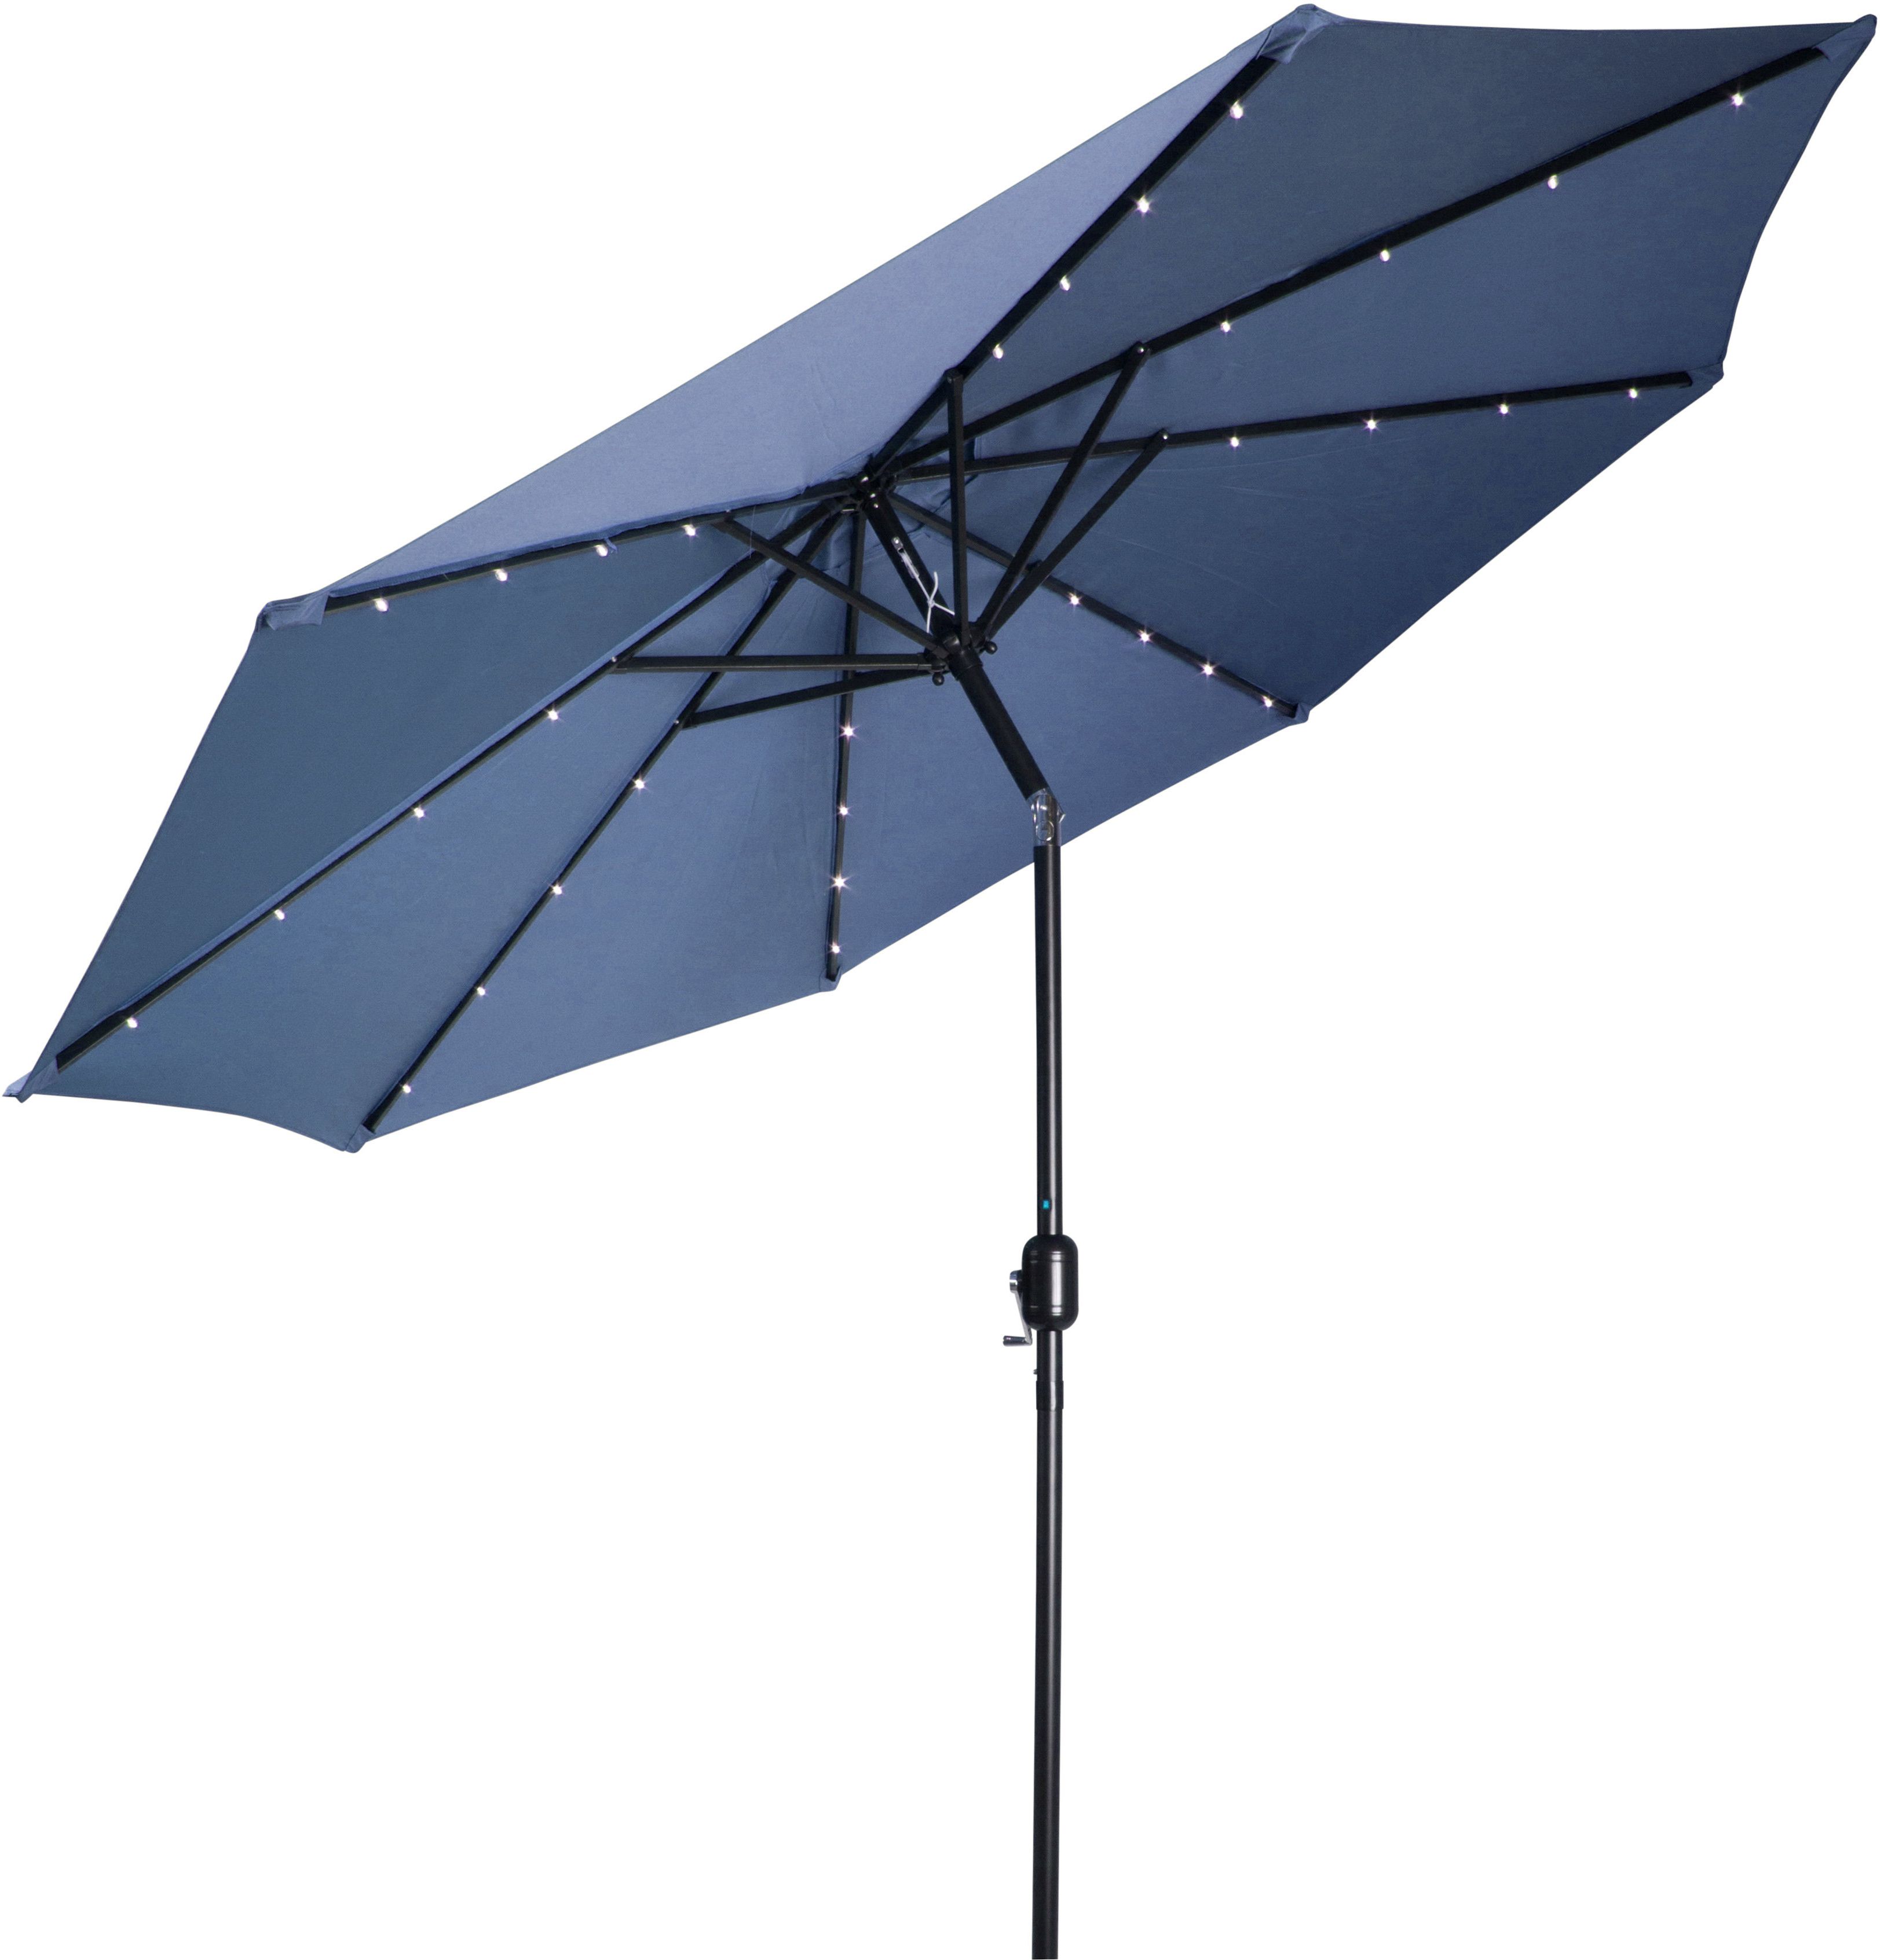 Markley Market Beach Umbrellas Throughout Most Popular Breeden 10' Lighted Umbrella (View 8 of 20)